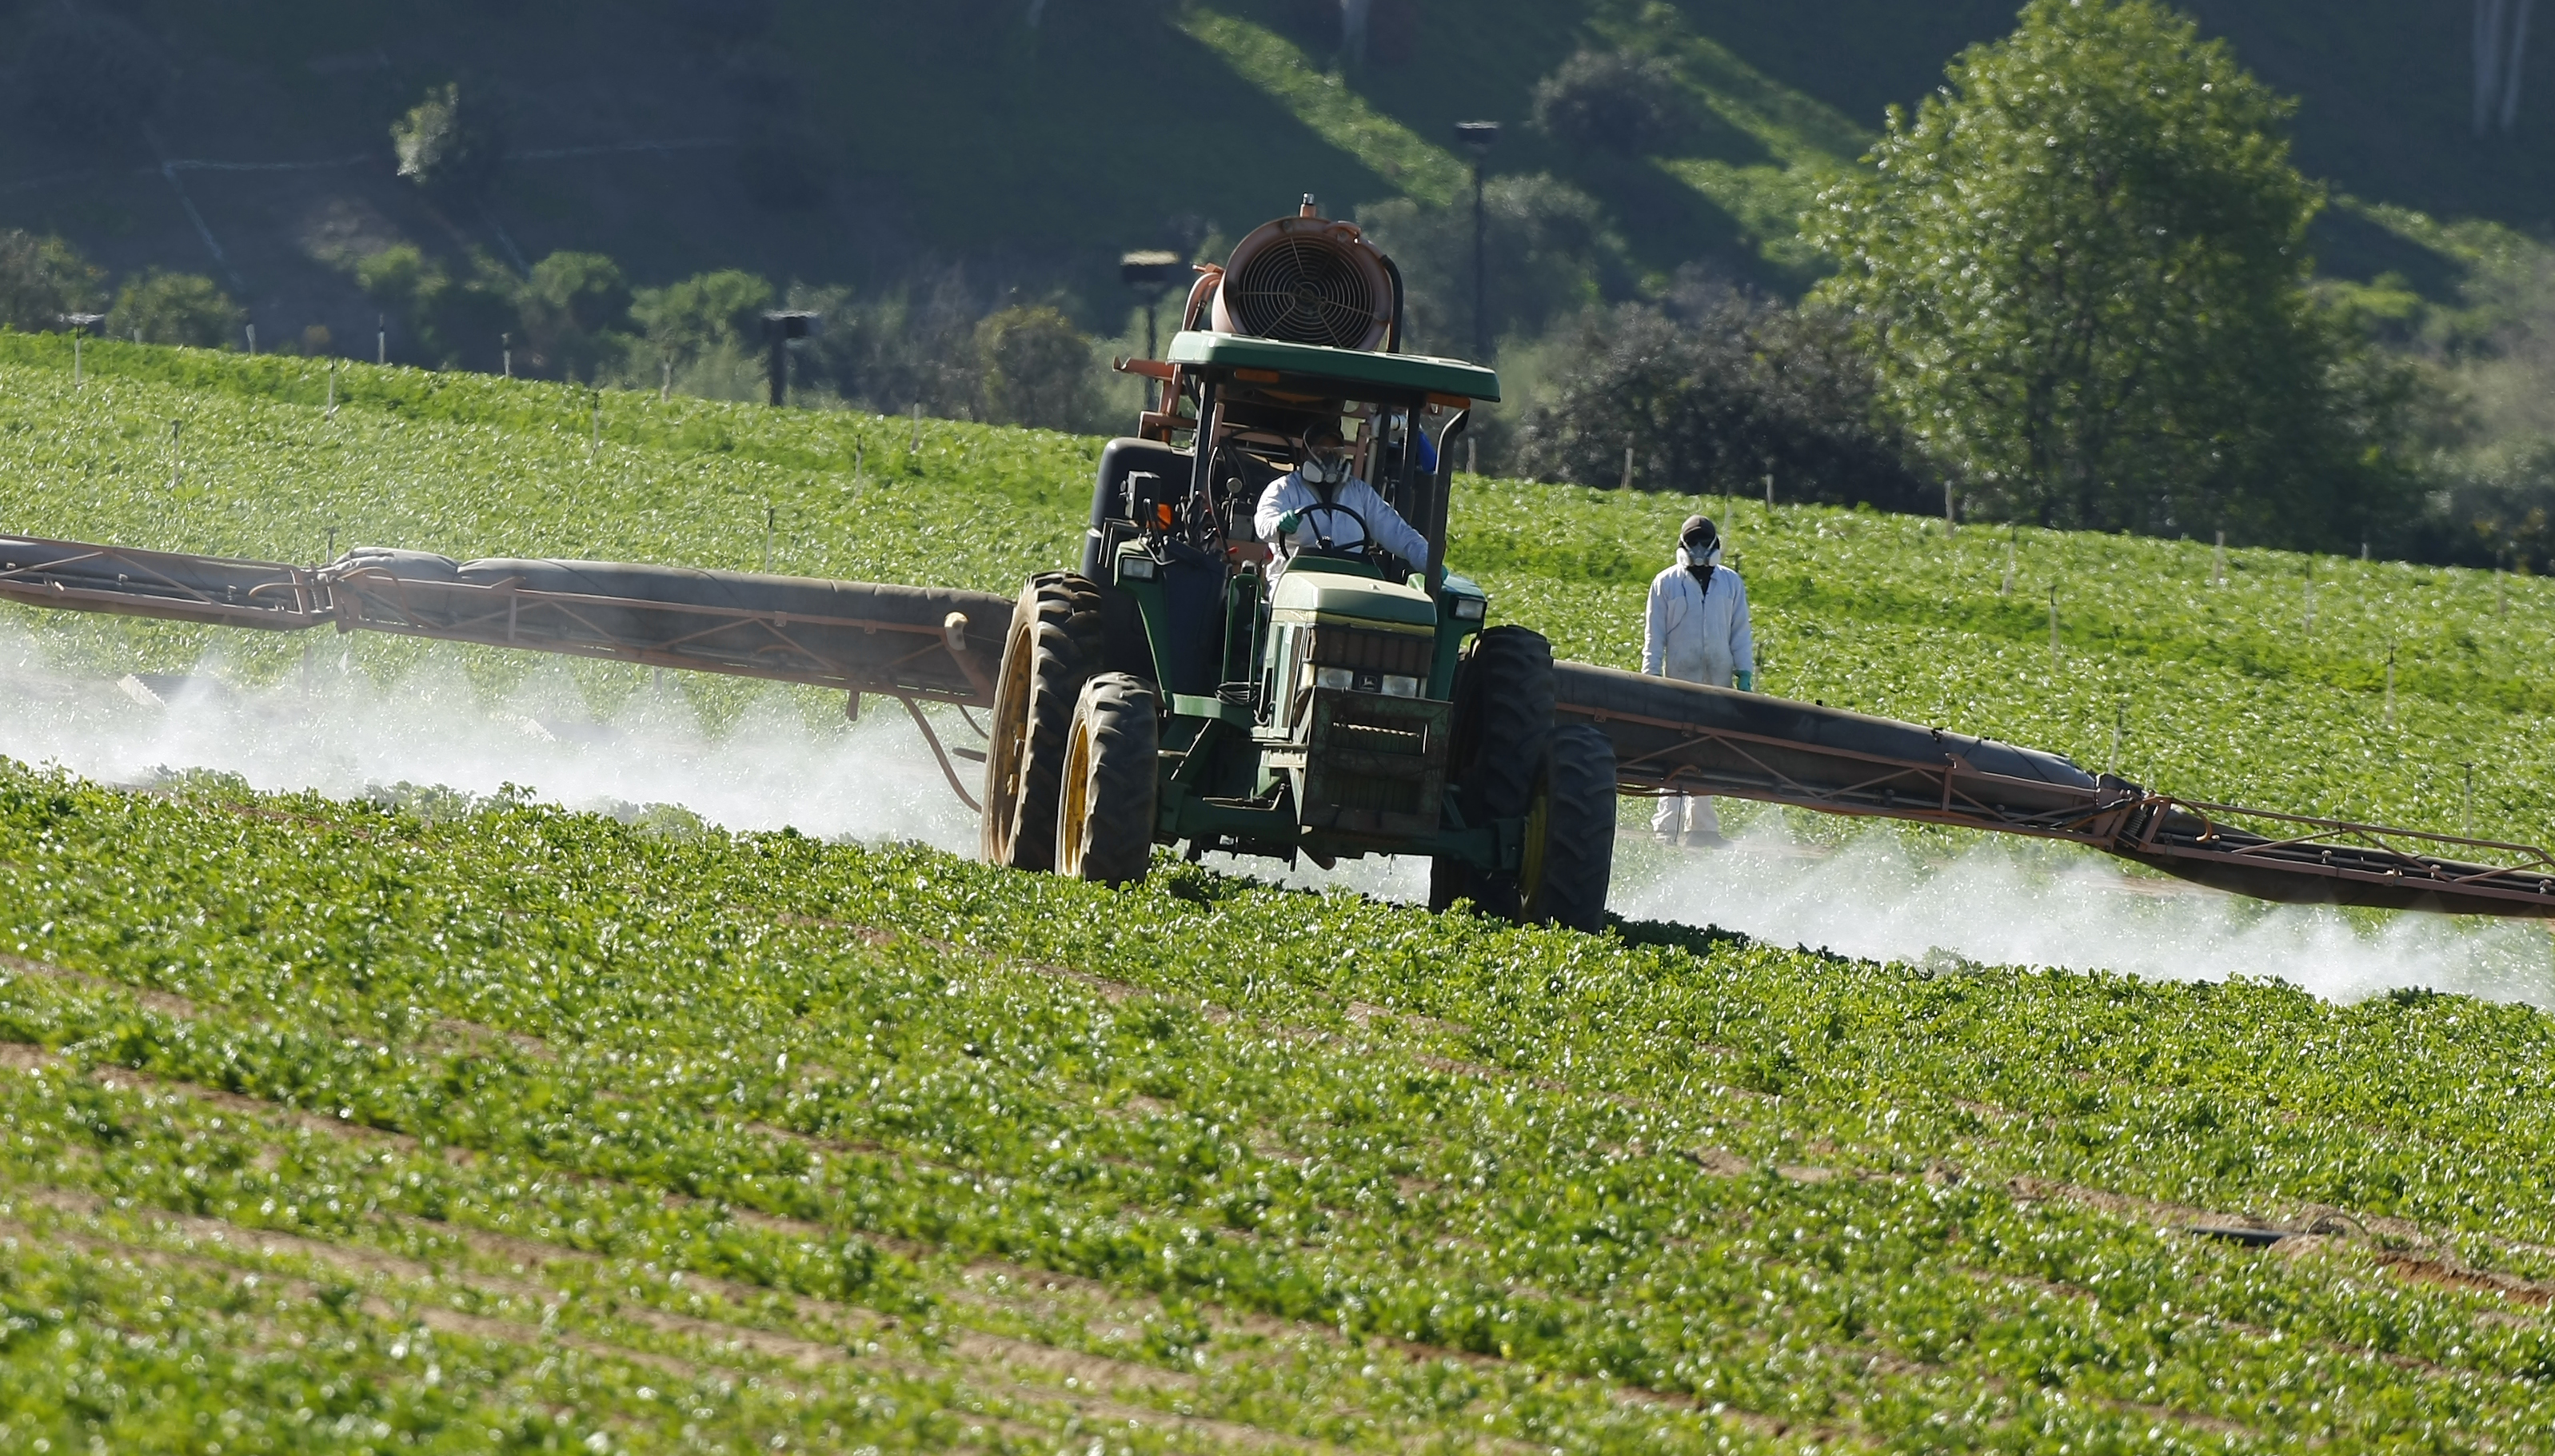 Comment Rennes Métropole veut atteindre le « zéro pesticide de synthèse » d’ici à 2030